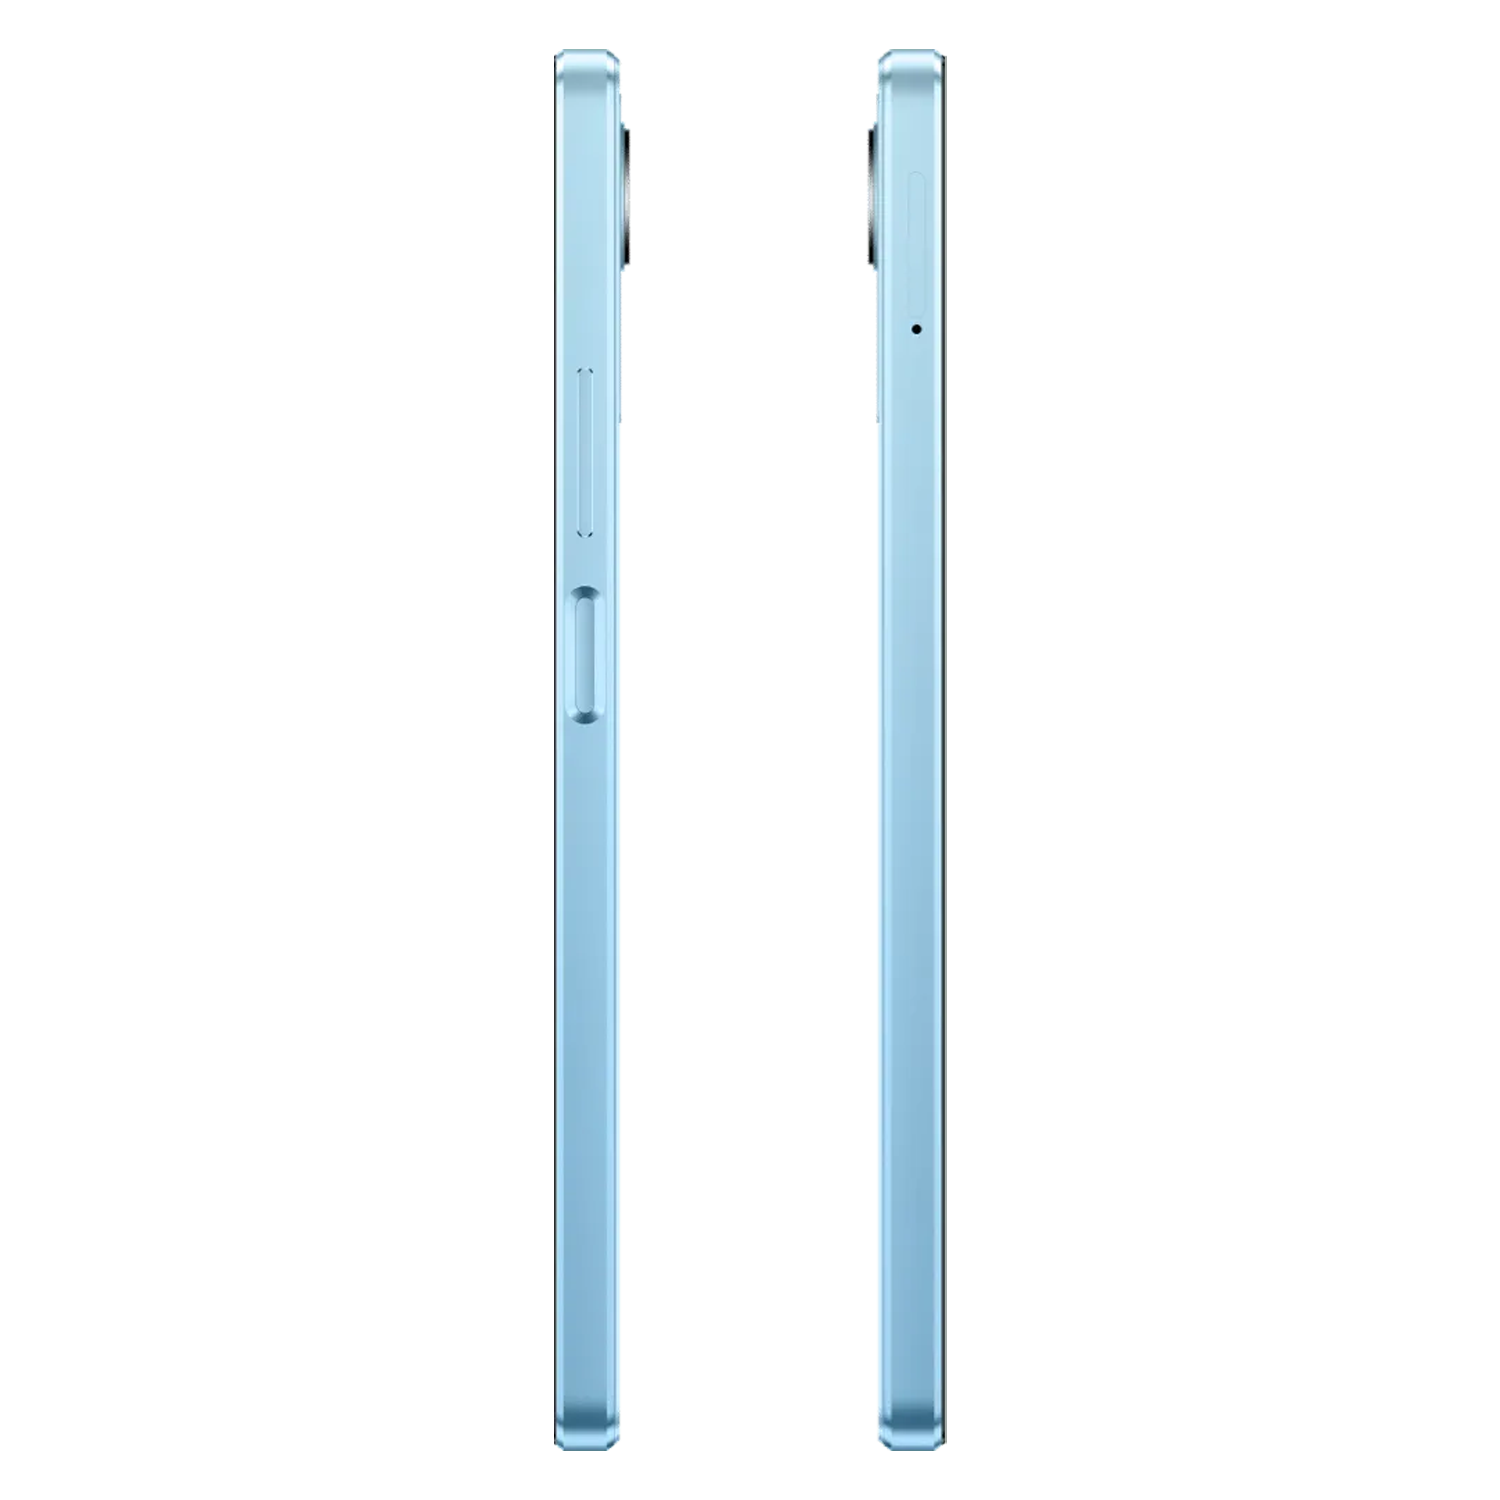 Celular Realme C30S RMX3690 Dual SIM / 2GB RAM / 32GB / Tela 6.5" / Câmeras 8MP e 5MP - Stripe Blue (Anatel)
